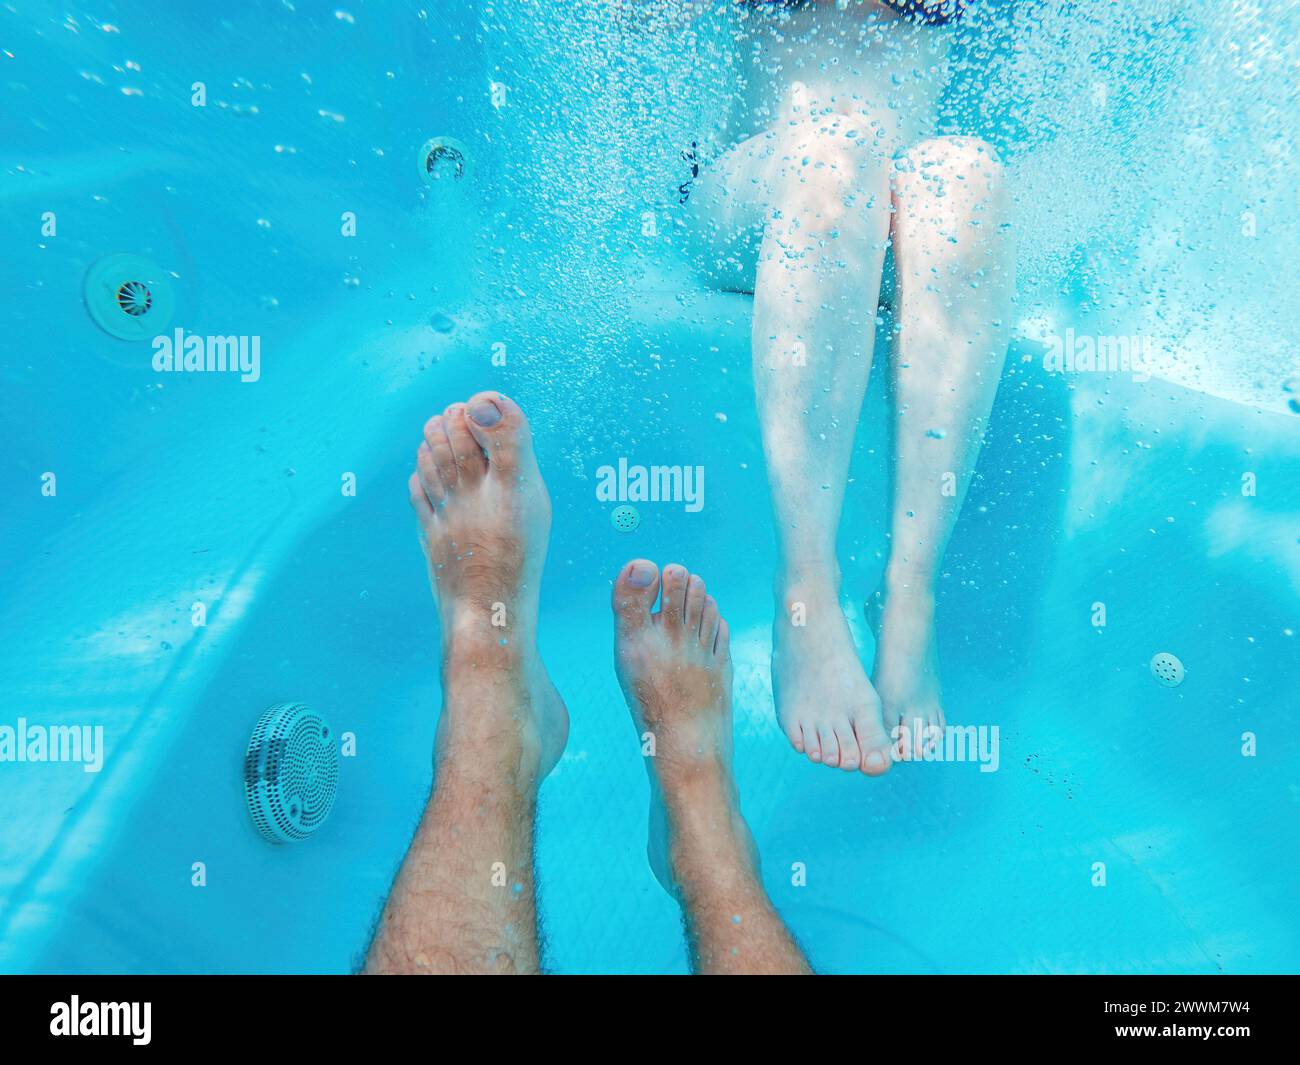 Coppia nella vasca idromassaggio, ripresa subacquea di gambe maschili e femminili in acqua, messa a fuoco selettiva Foto Stock